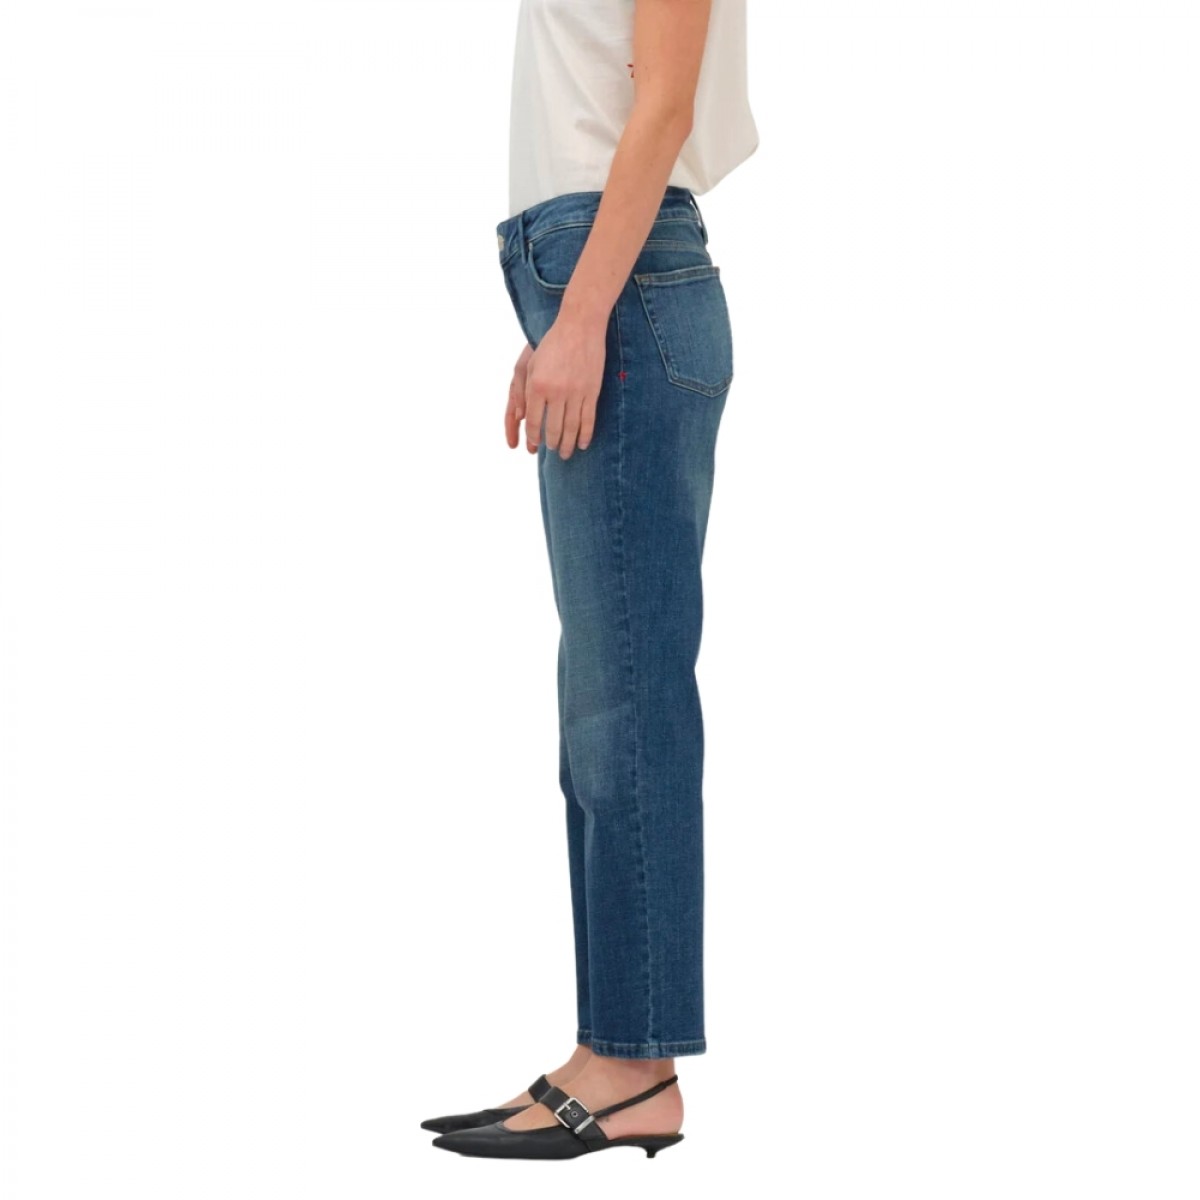 teresa jeans - denim blue - fra siden 